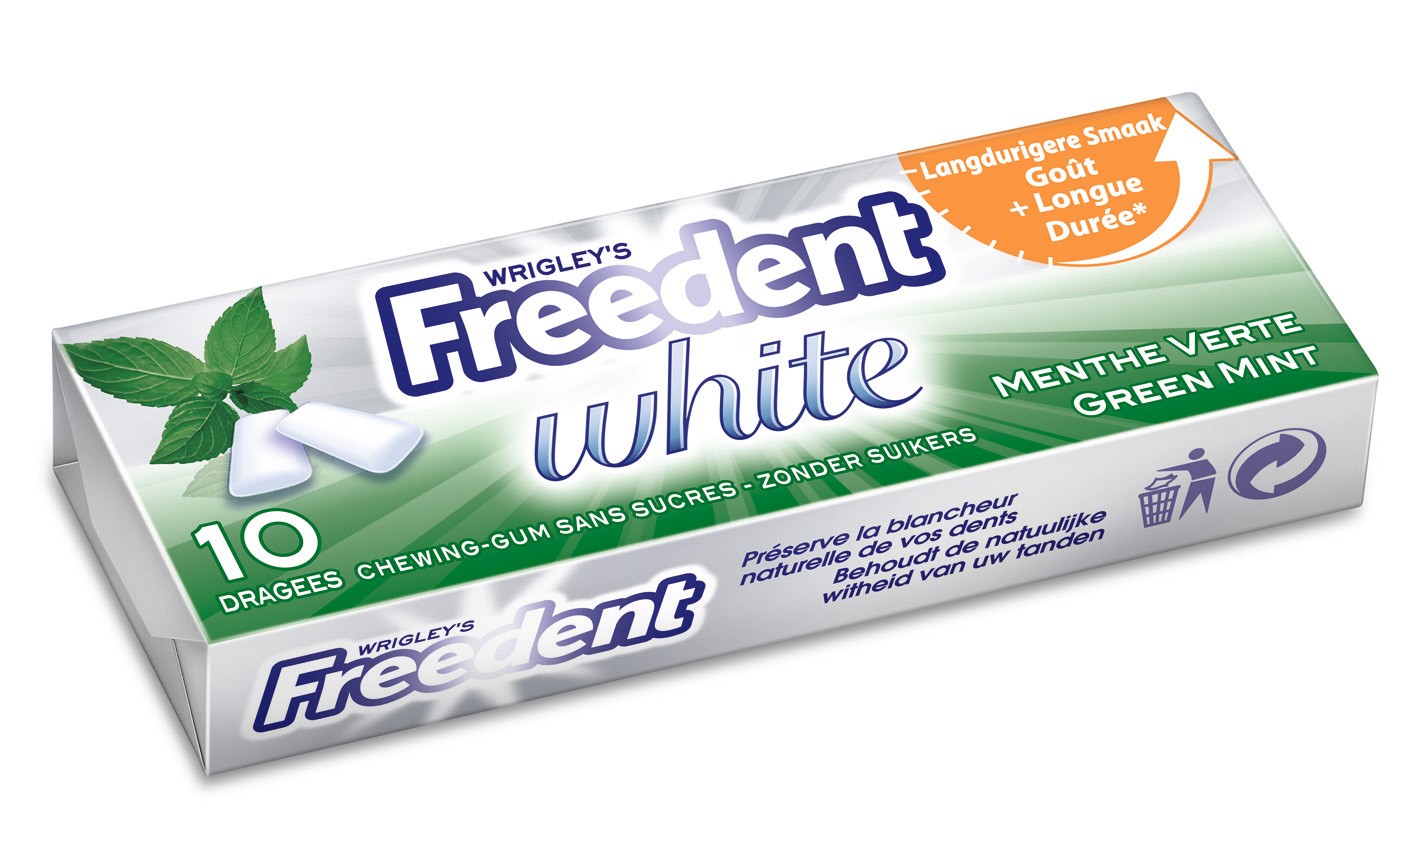 Chewing-gum sans sucres goût Bubble Menthe FREEDENT WHITE : les 5